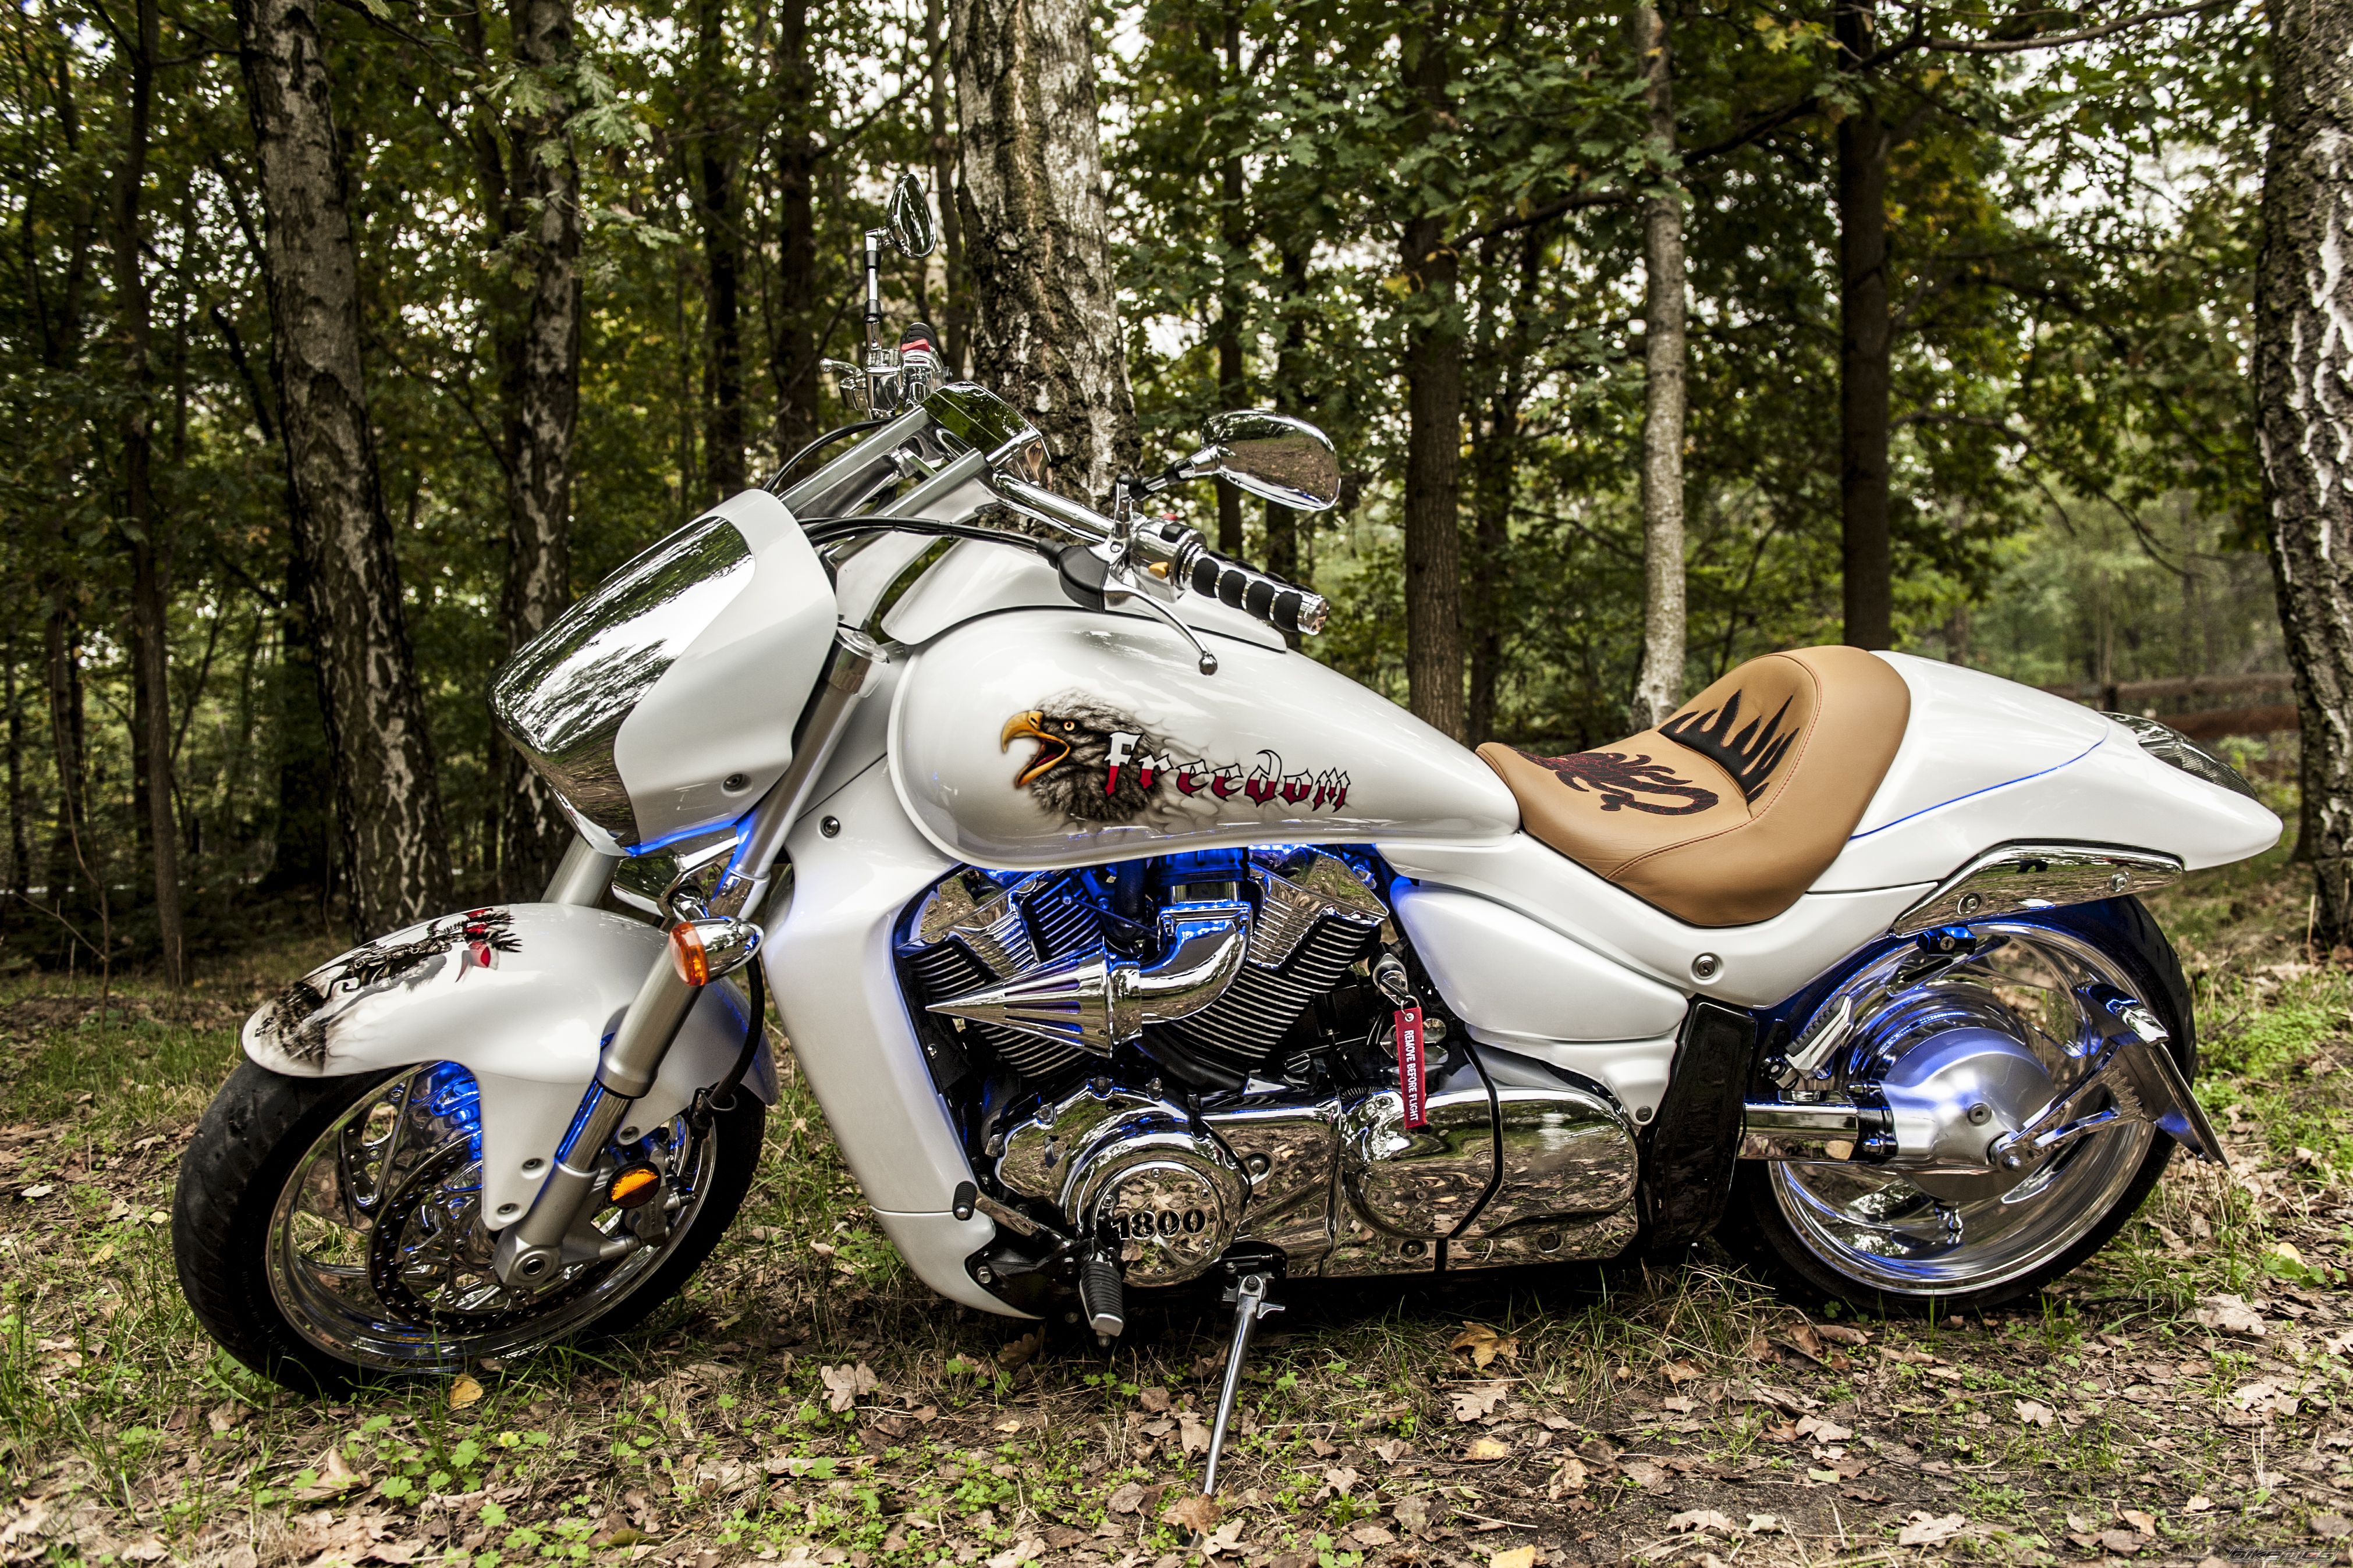 Мотоцикл suzuki intruder (сузуки интрудер) m 1800 r — безусловный лидер в категории круизеров